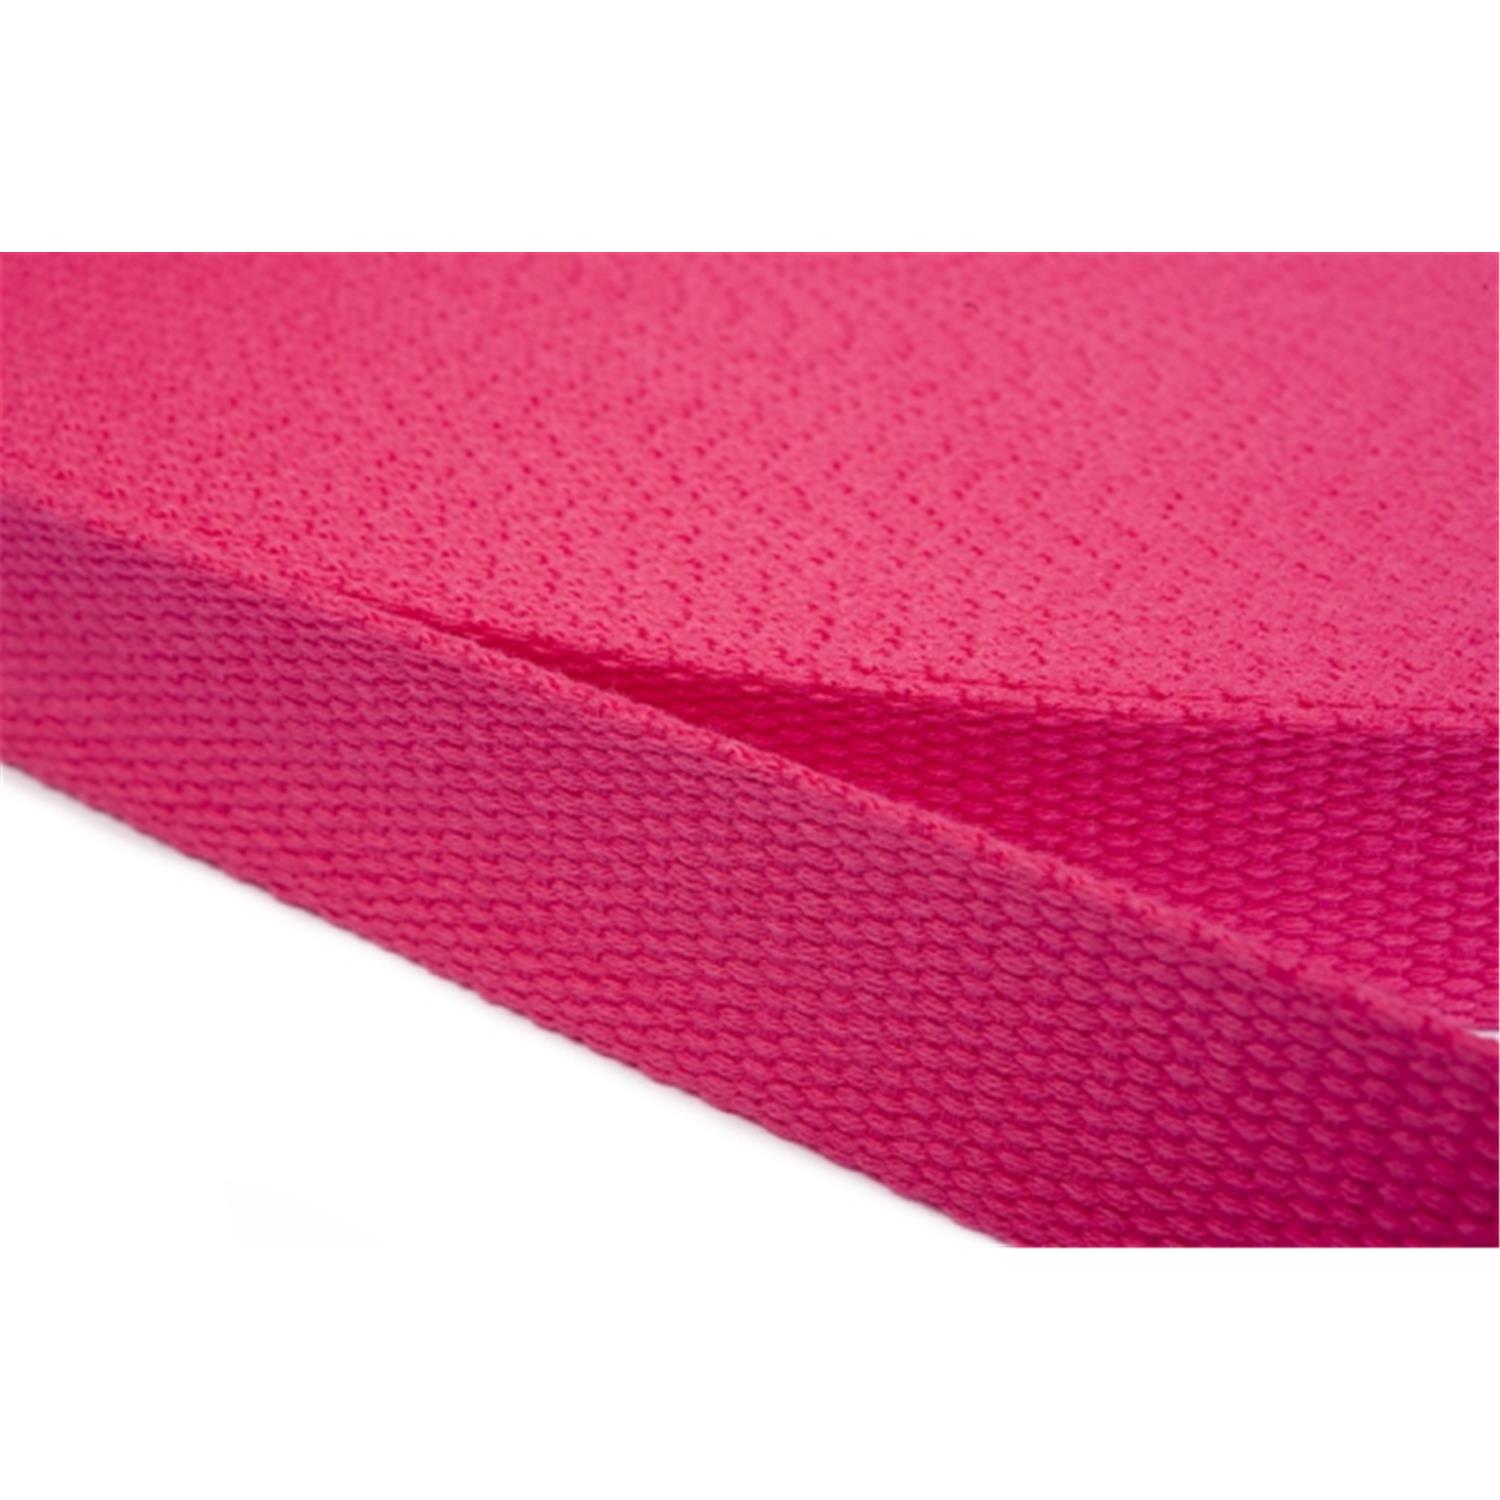 Gurtband aus Baumwolle 25mm in 20 Farben 07 - rosa/pink 6 Meter